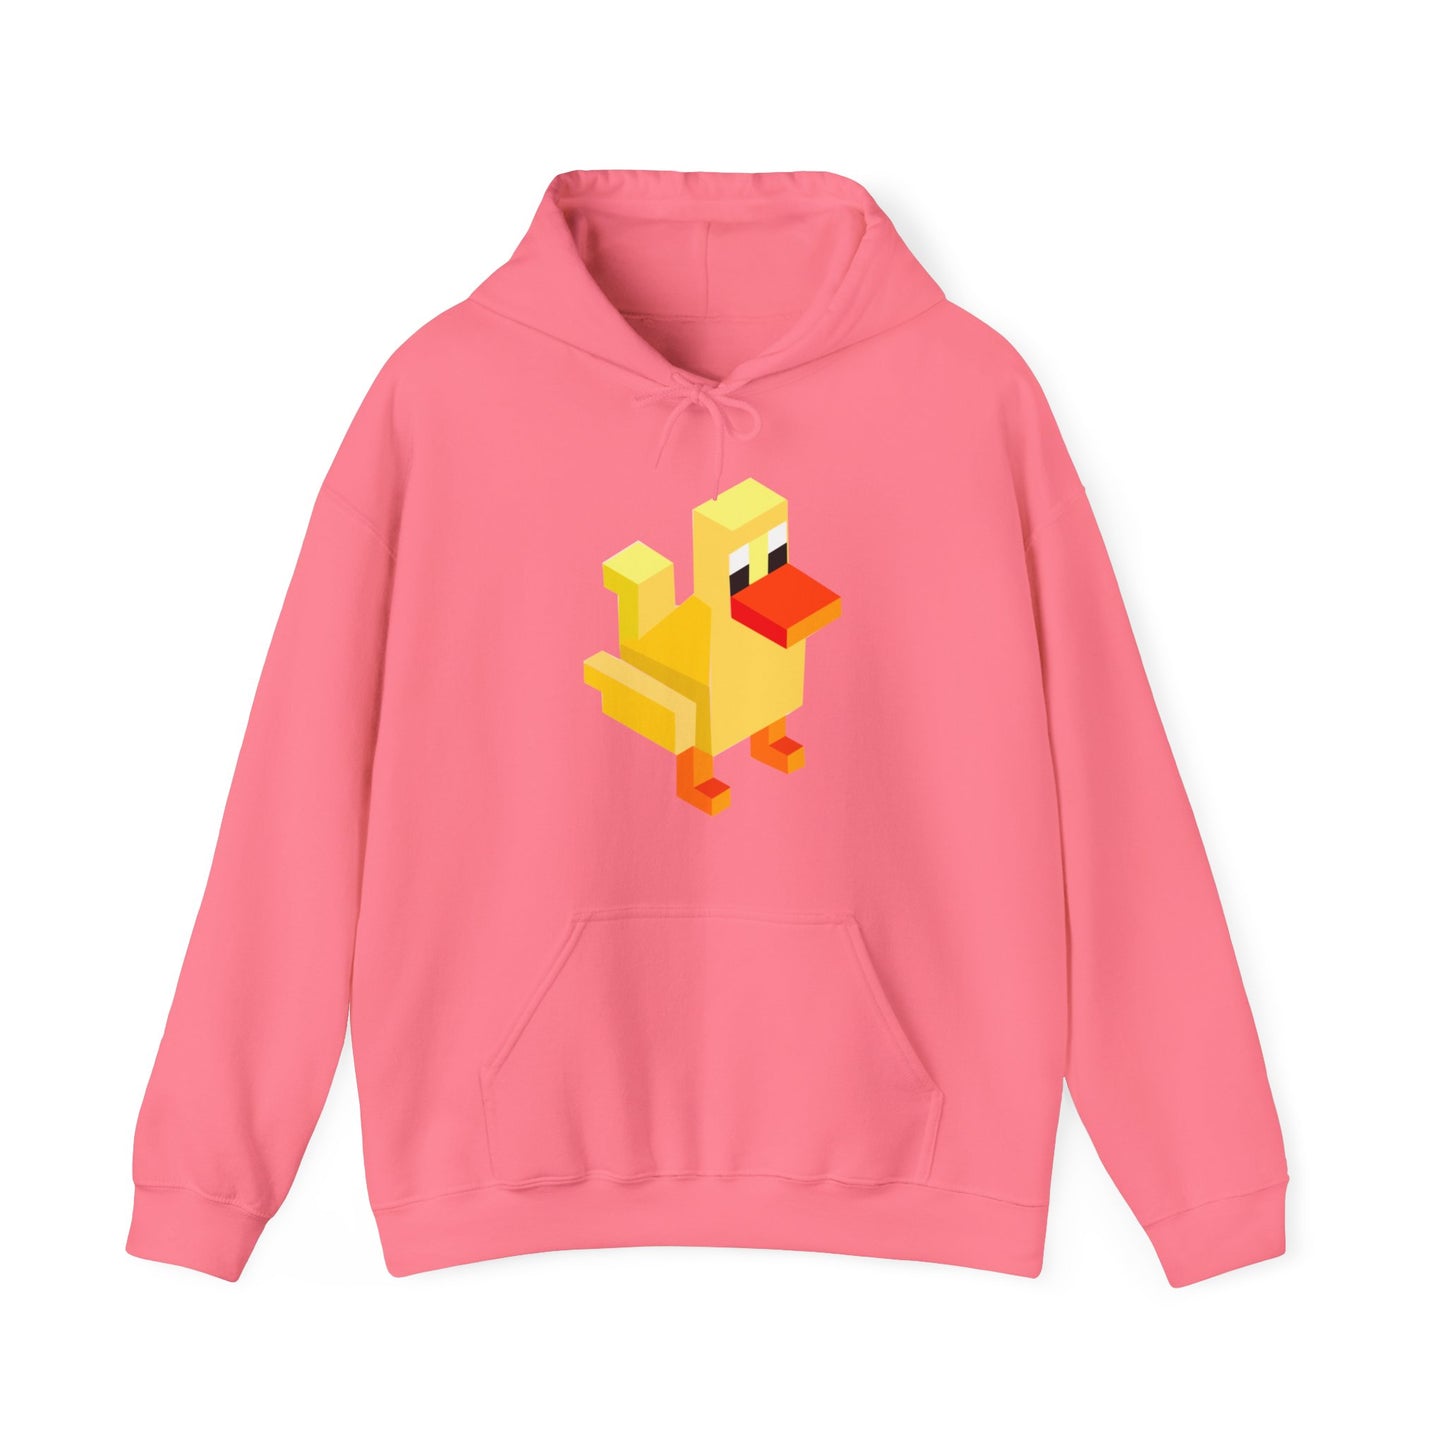 Arcade Duck Hooded Sweatshirt